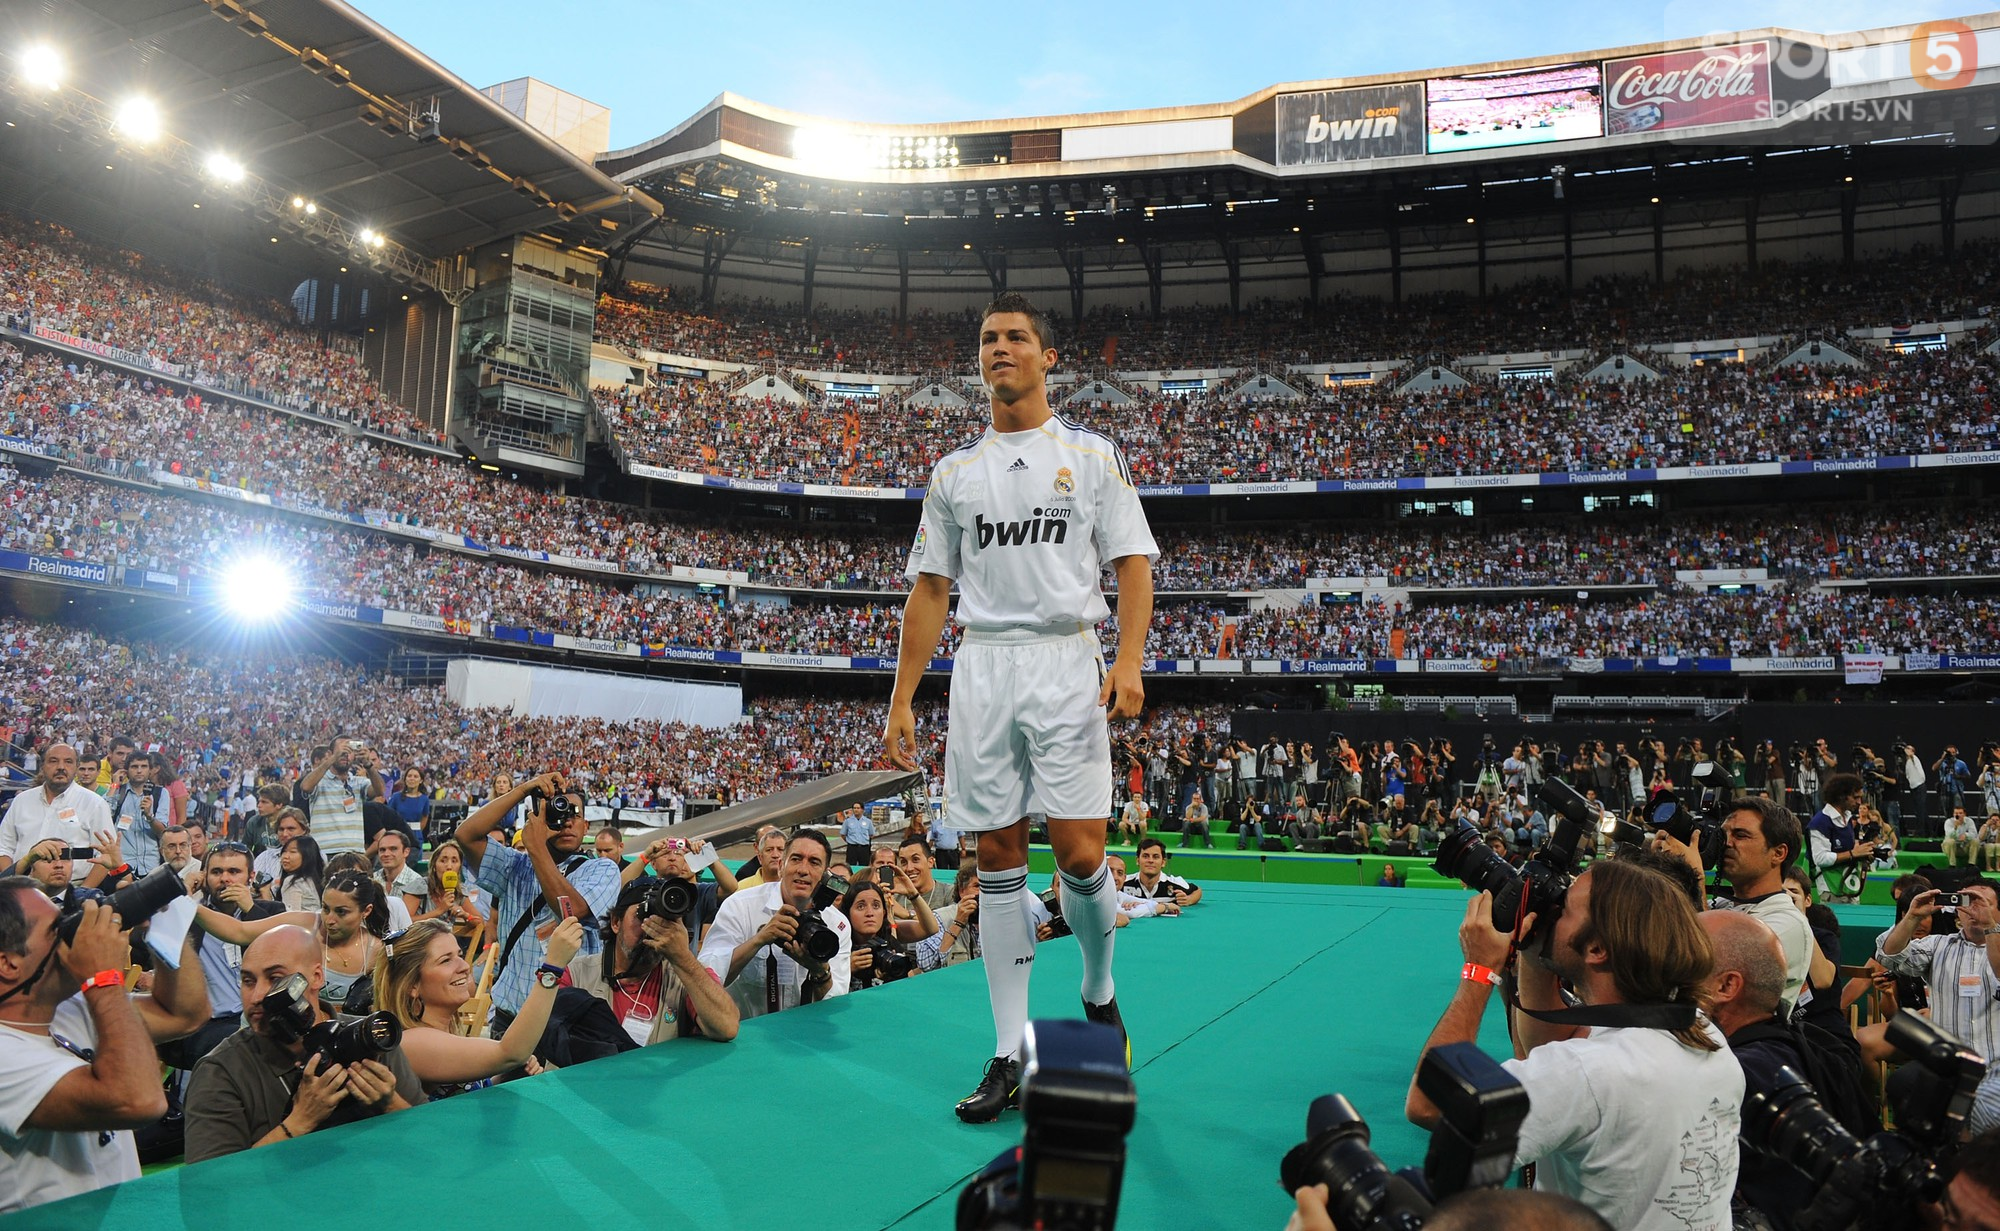 Cộng đồng mạng dự đoán fan phong trào bỏ Real, theo chân Ronaldo tới Juventus - Ảnh 1.